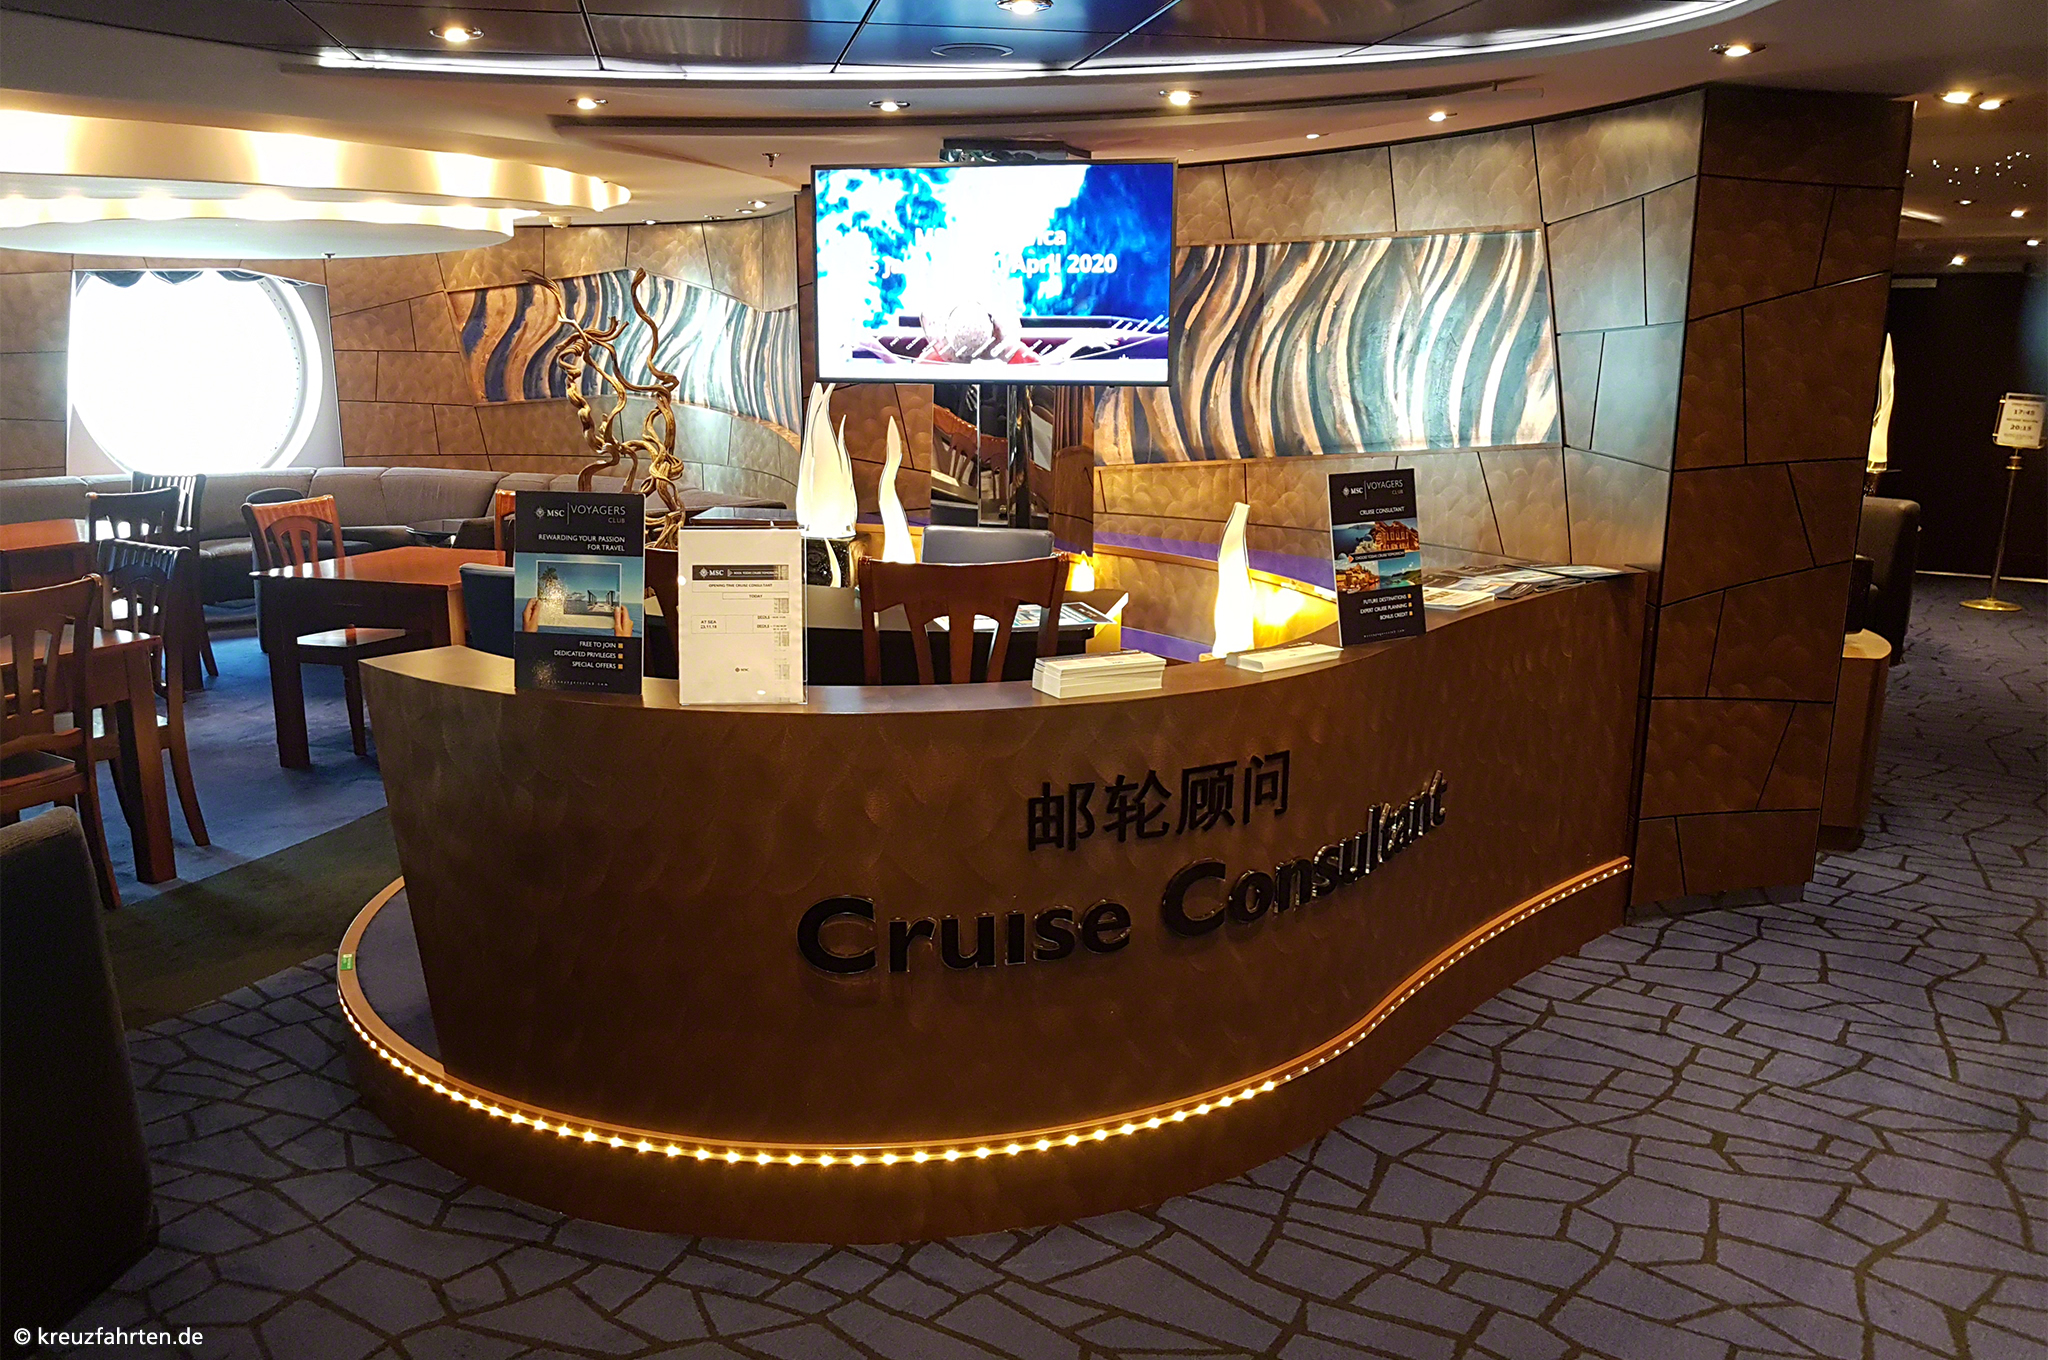 Cruise Consultant